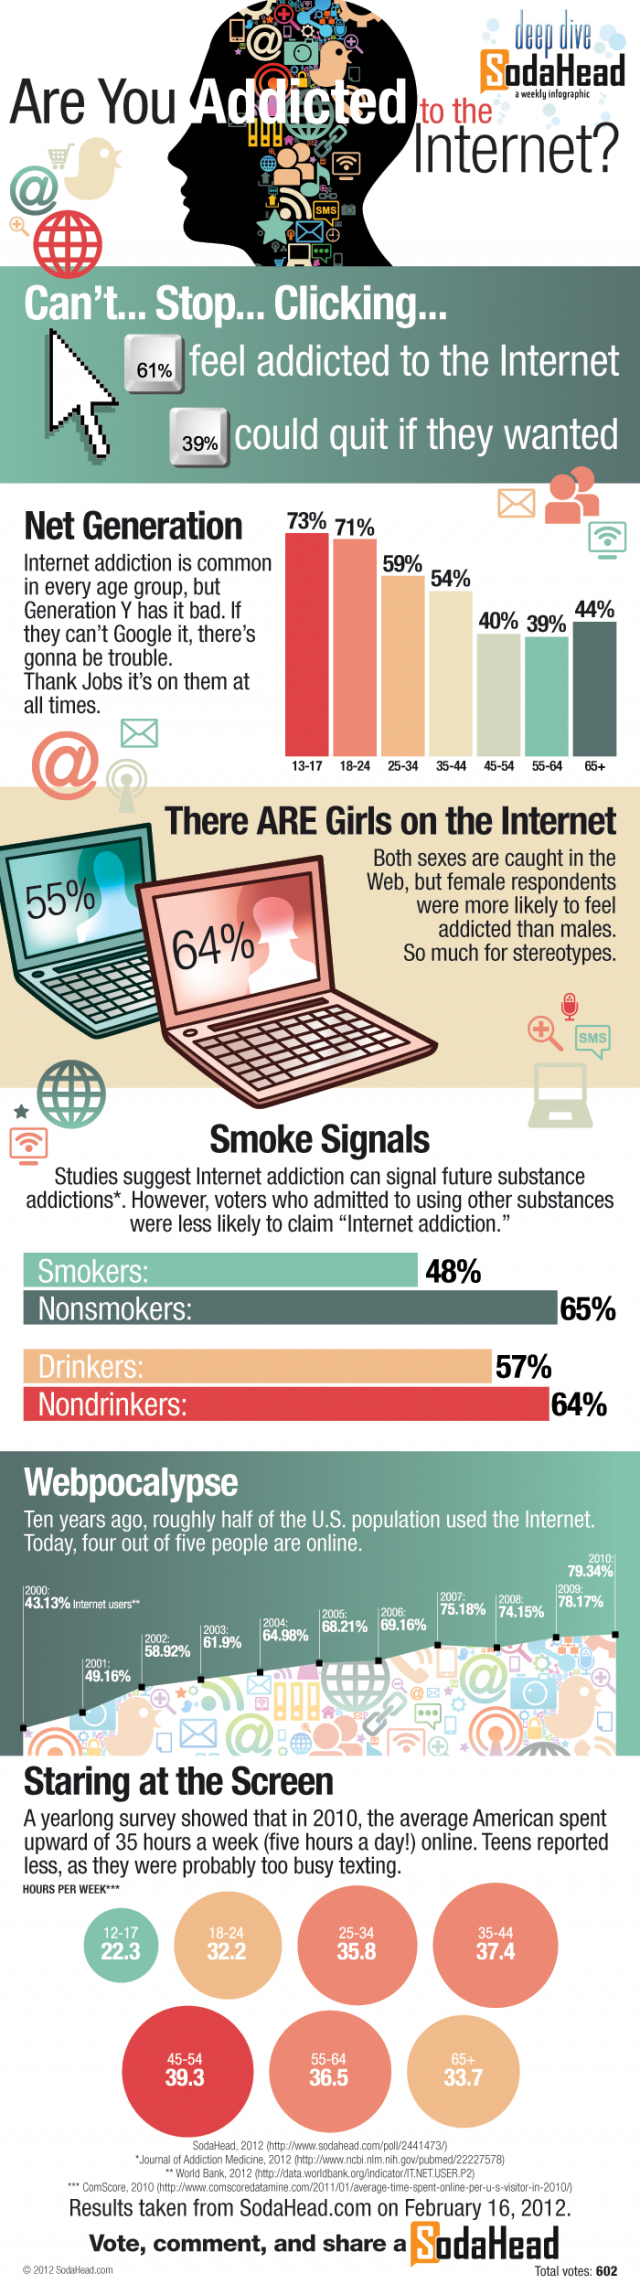 L'addiction à internet par les chiffres